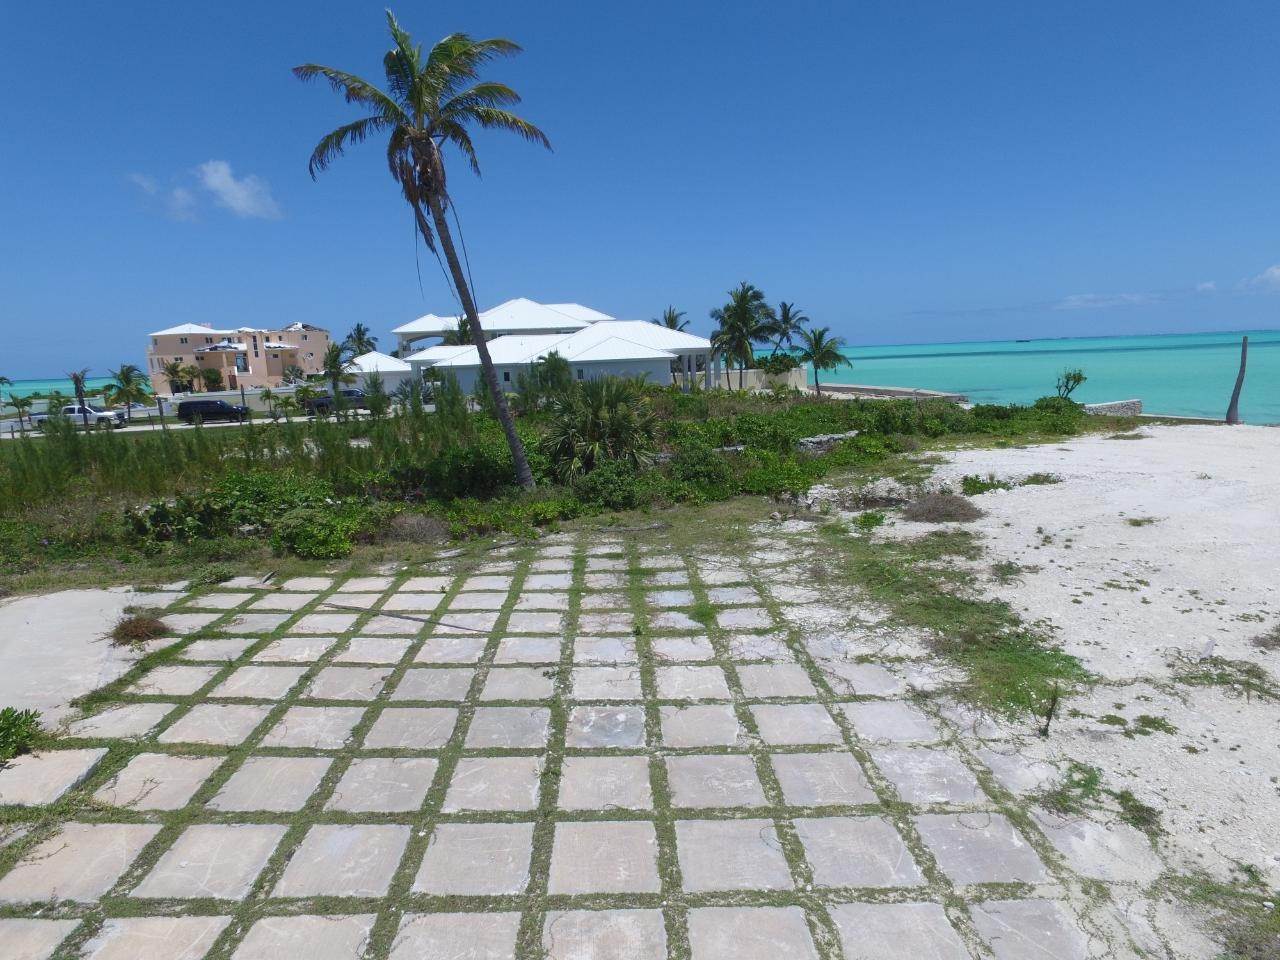 16. Lots / Acreage for Sale at Windward Beach, Treasure Cay, Abaco, Bahamas